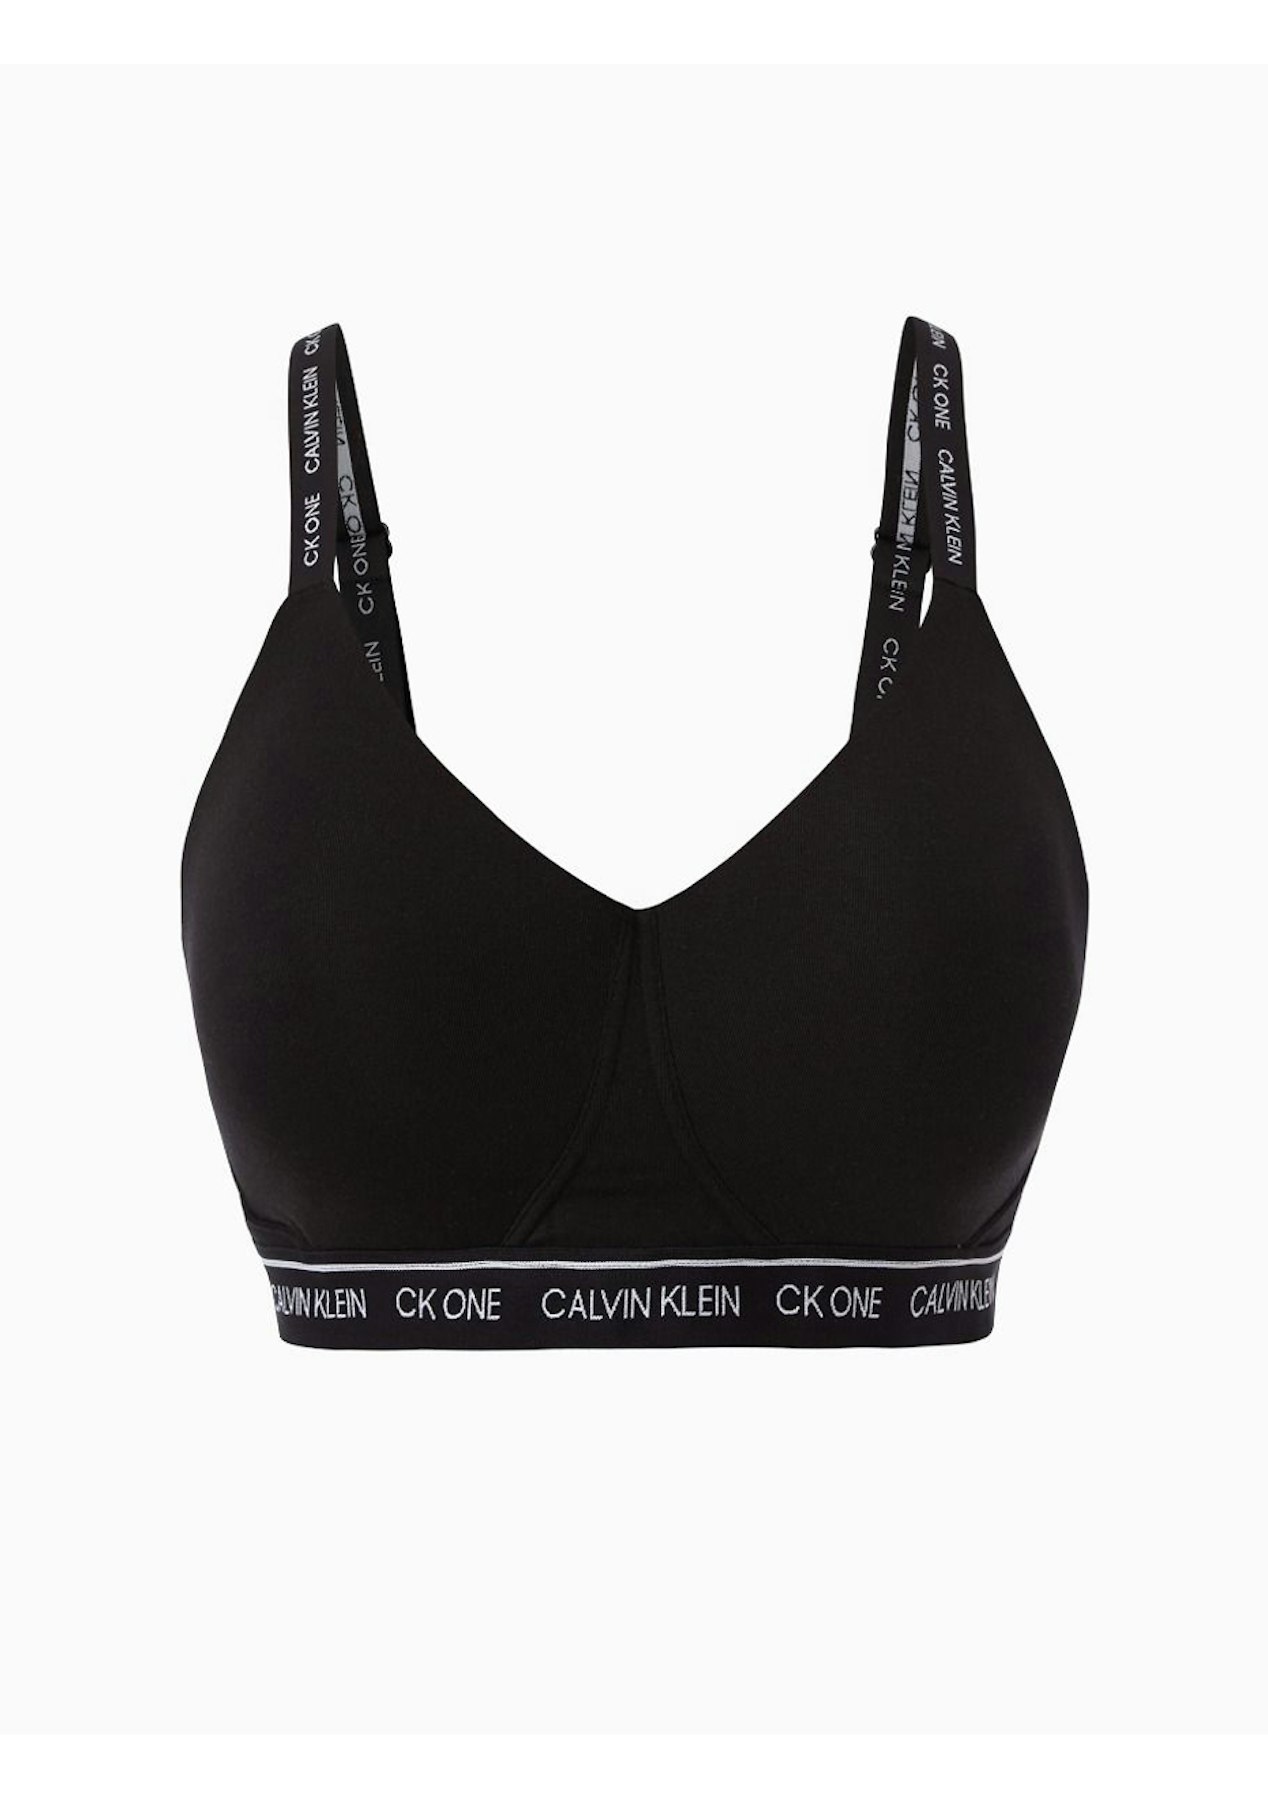 Calvin Klein - Womens CK1 Plus Size Cotton Light Lined Bralette - Black ...